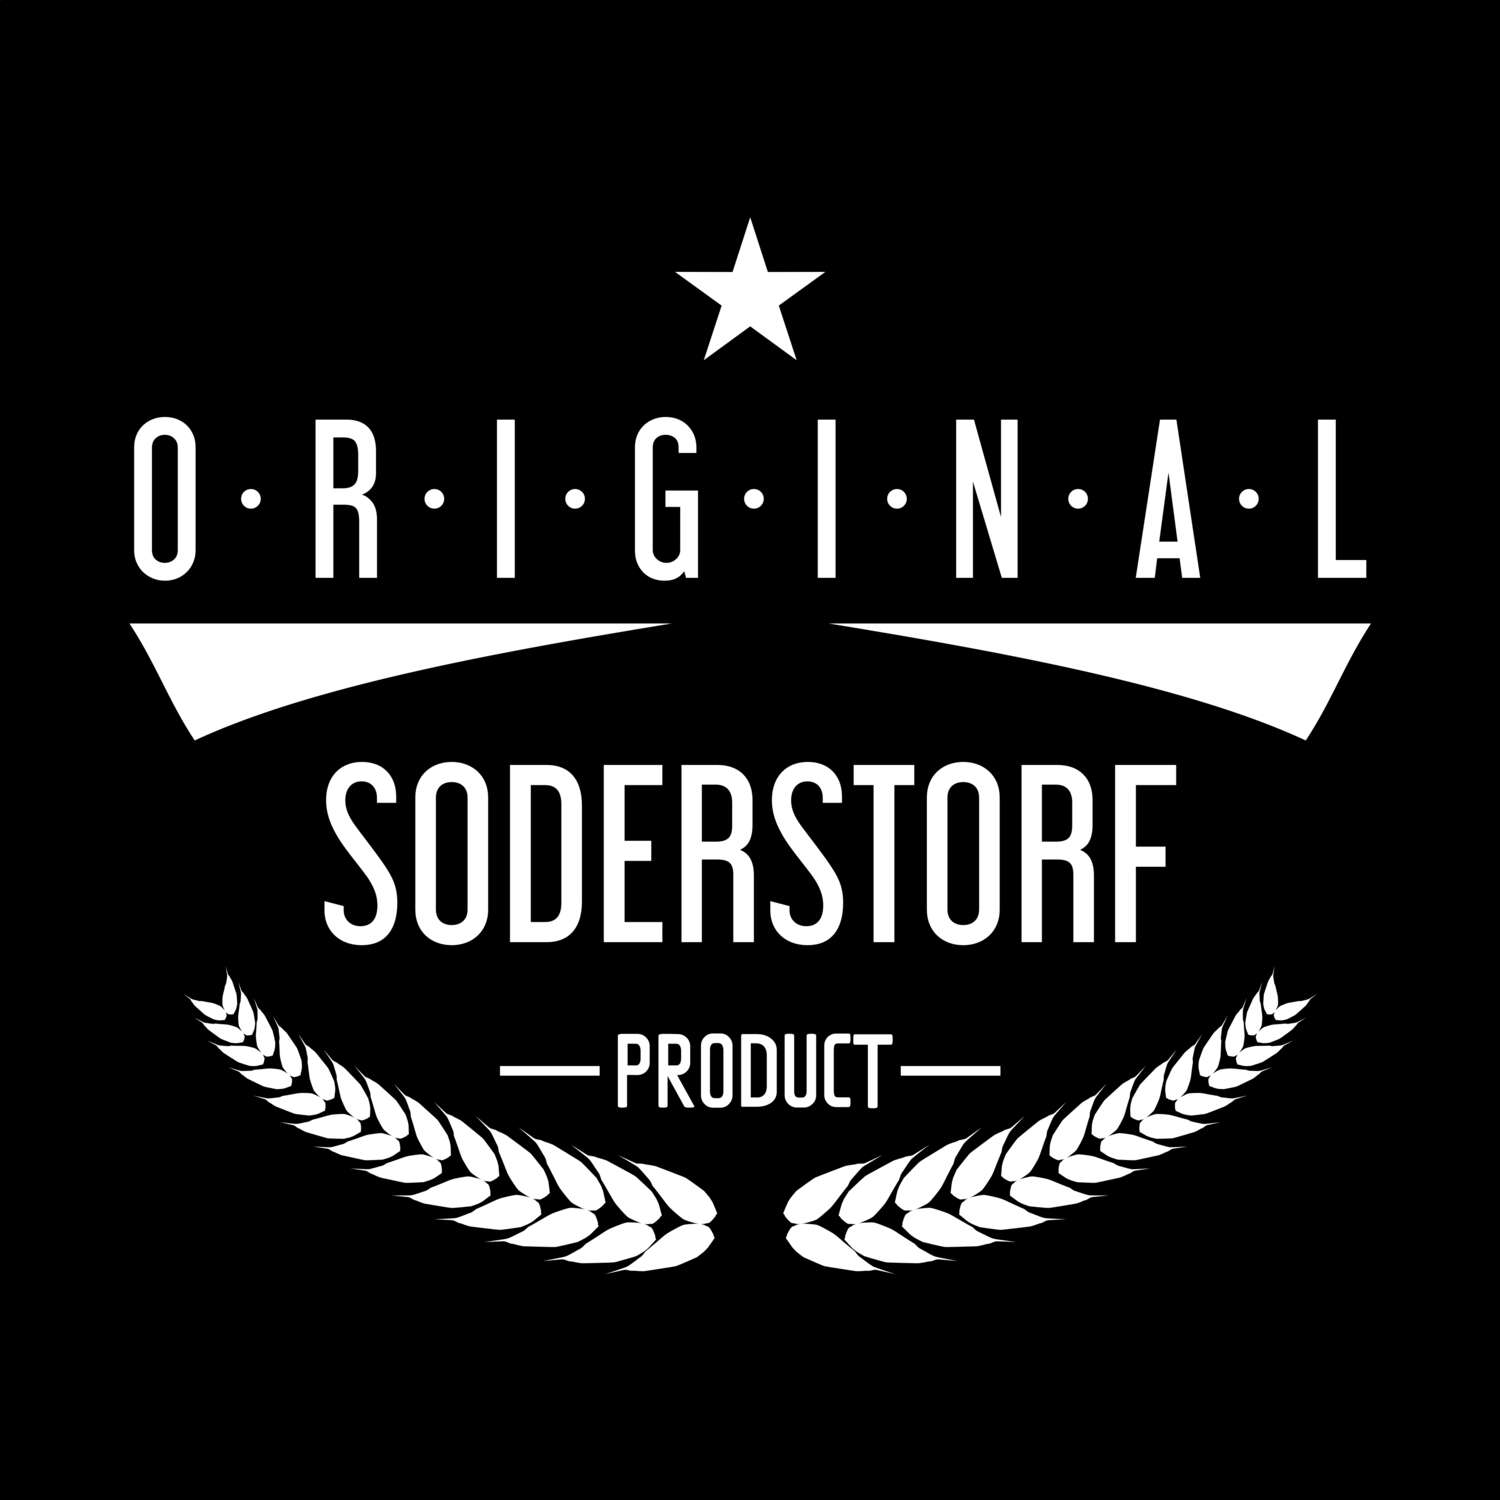 Soderstorf T-Shirt »Original Product«